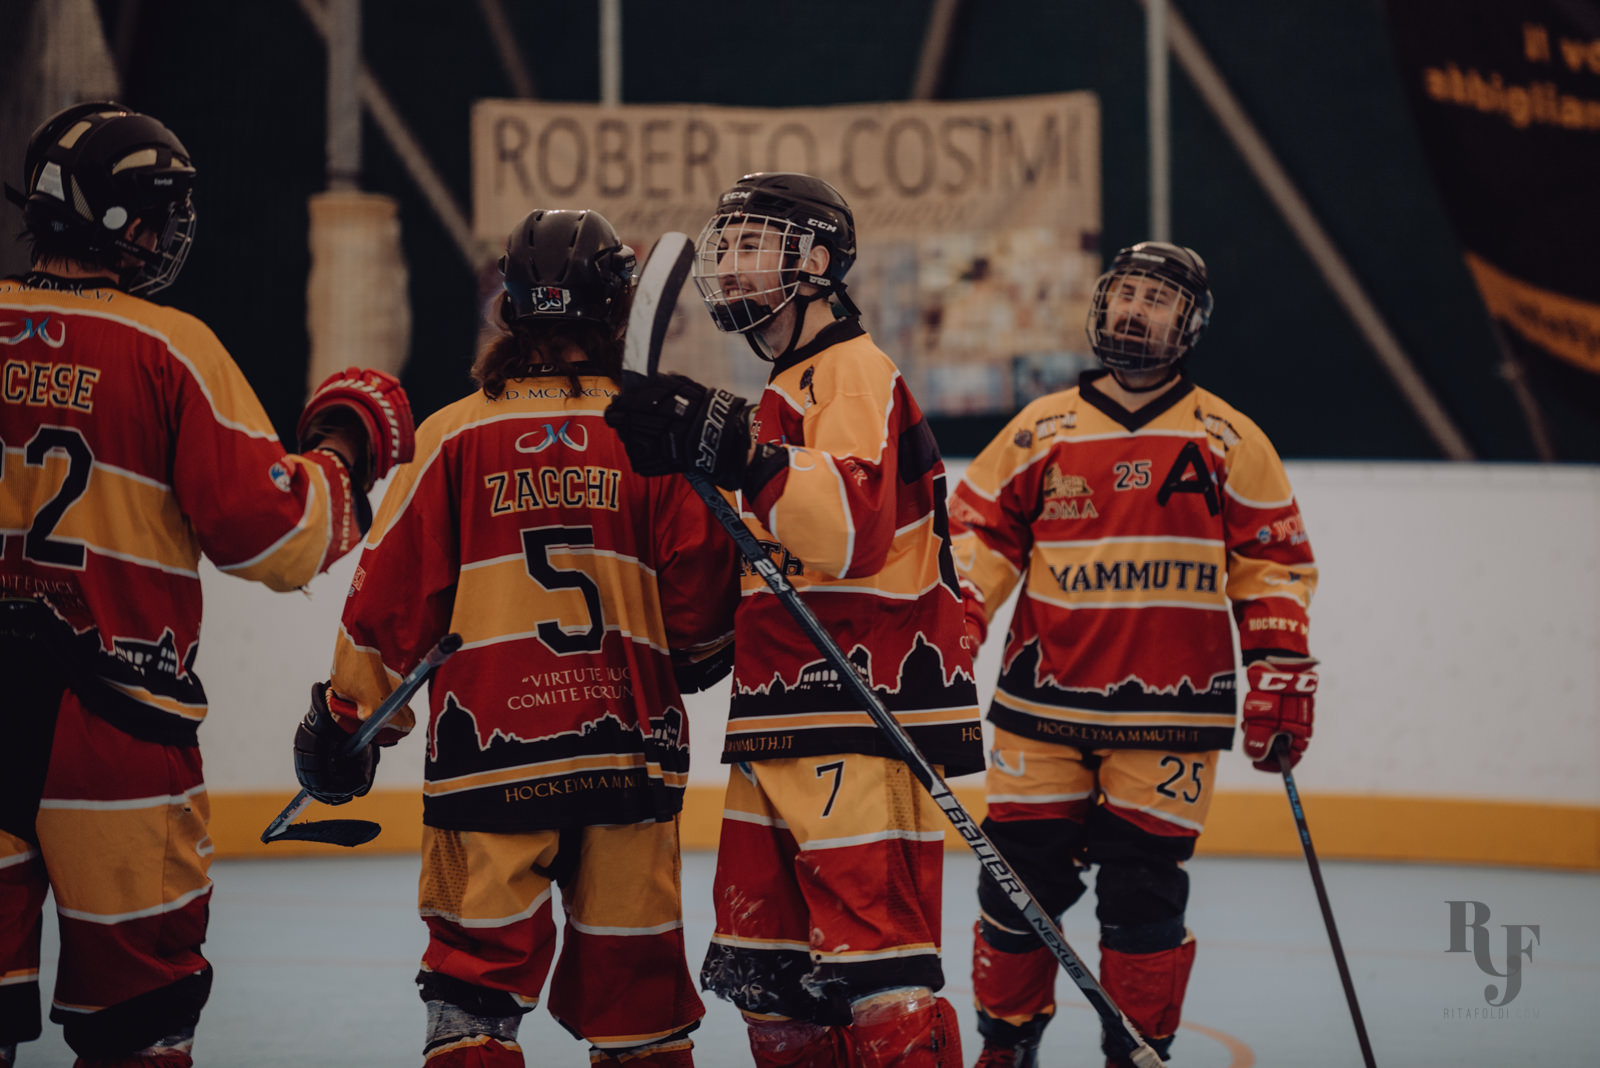 Mammuth Roma, Mammuth Hockey, Hockey Roma, pattinaggio e hockey a roma, inline hockey a roma